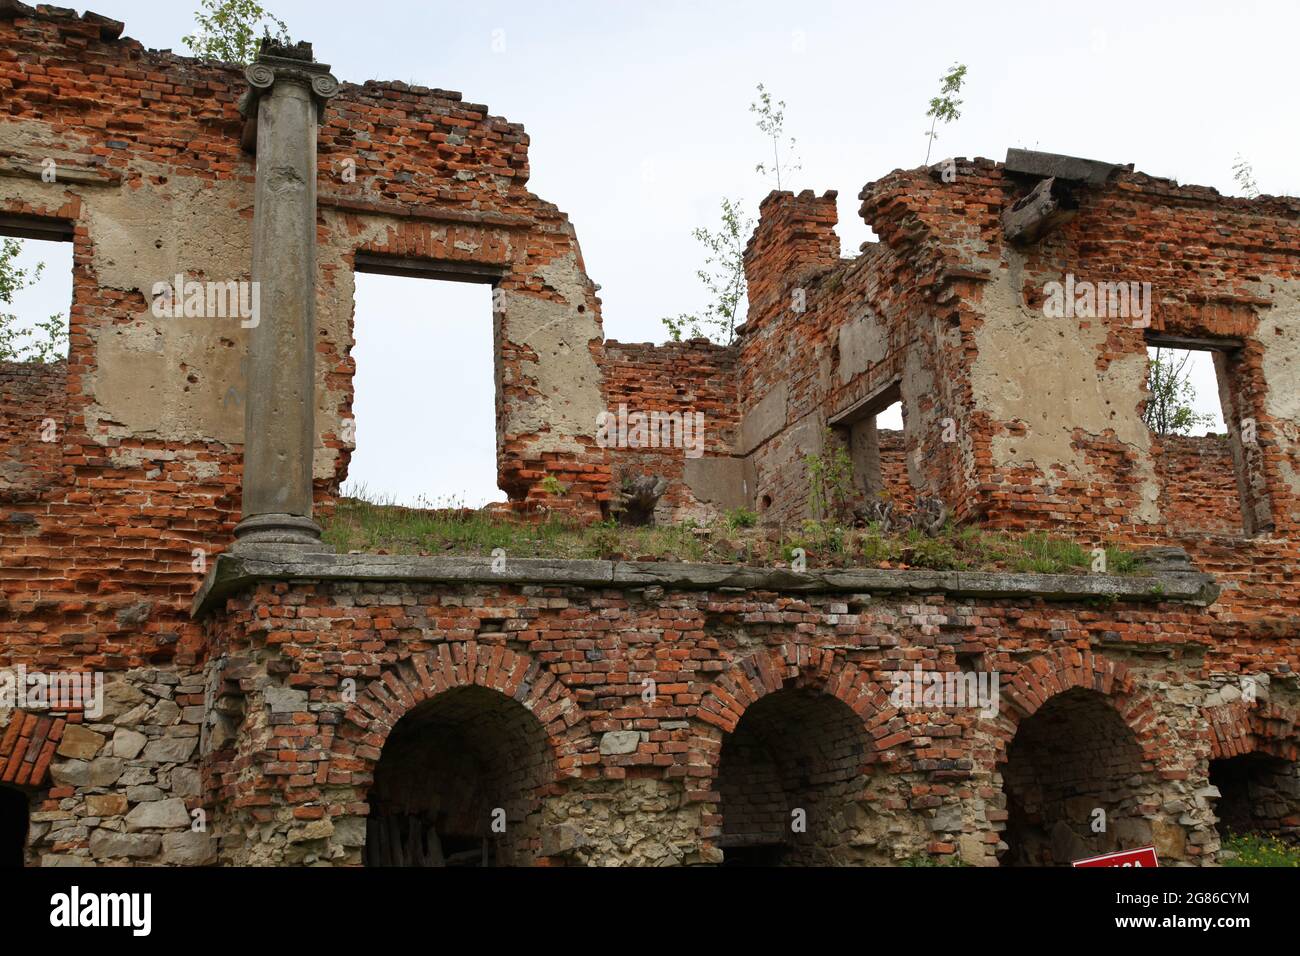 Ruinen des Karski-Palastes, Karski, Włostow, swietokrzyskie, Palast, Stockfoto